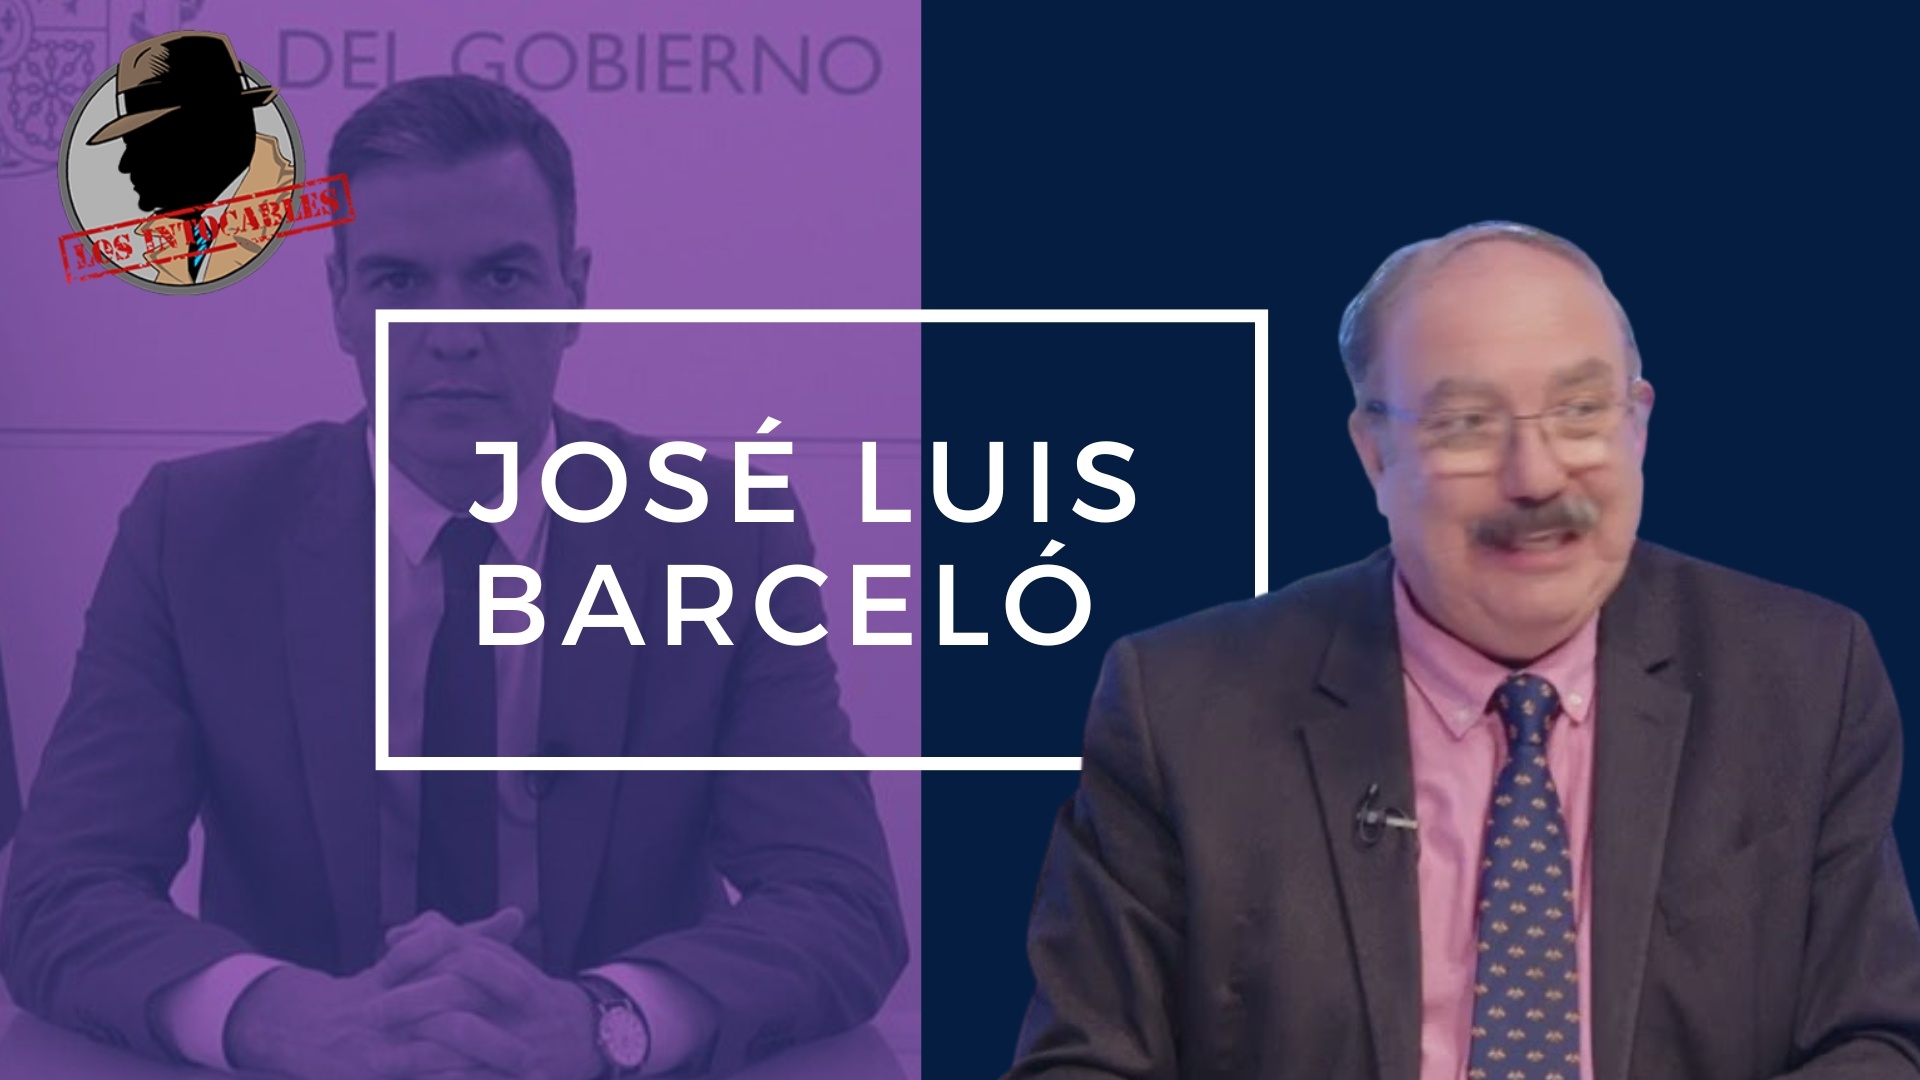 JOSÉ LUIS BARCELO: LA LEY DE PARTIDOS POLÍTICOS PERMITE QUE CUALQUIERA ESTE EN LISTAS ELECTORALES